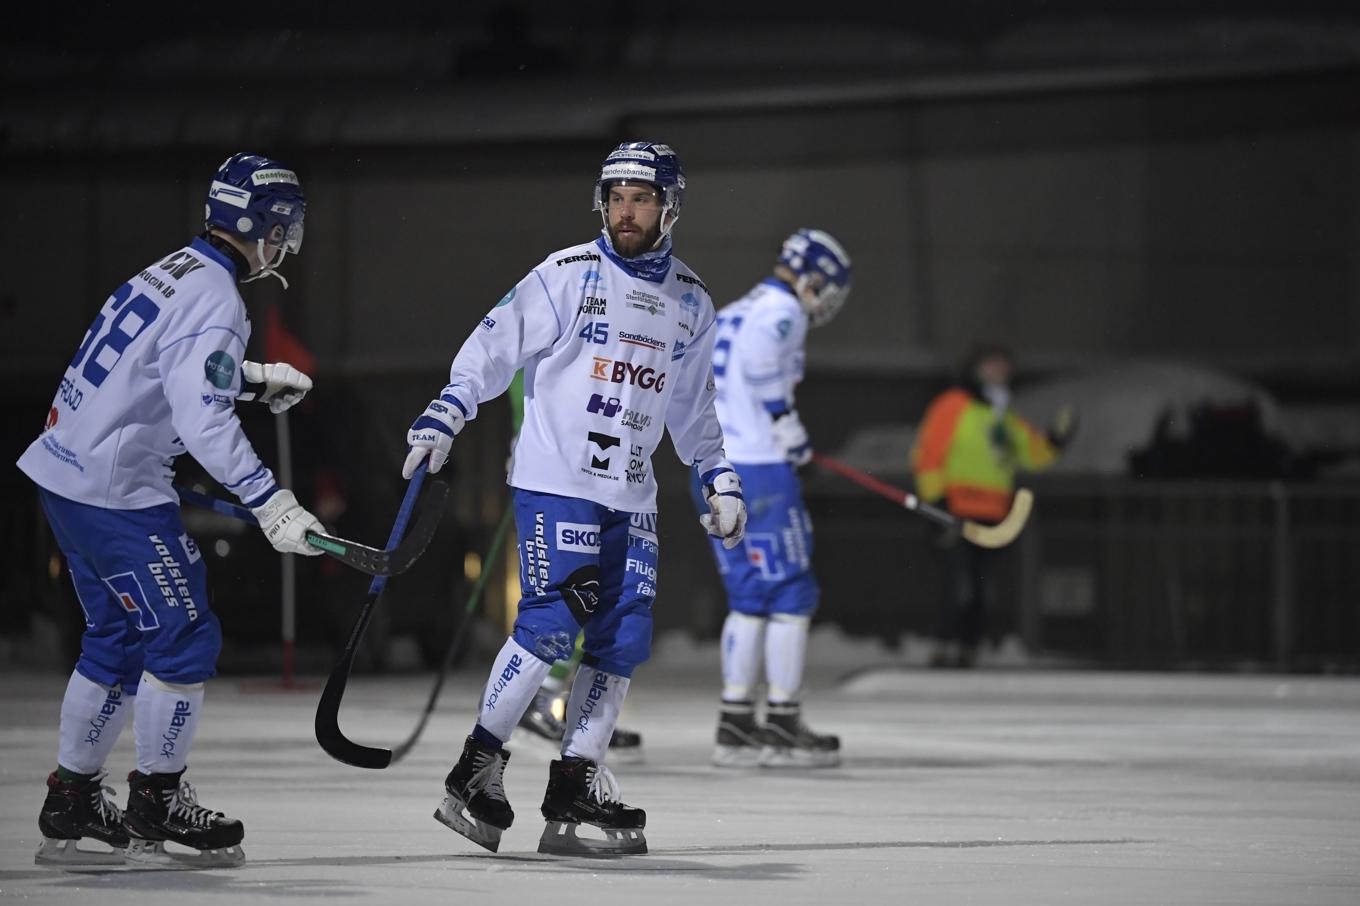 IFK Motala lämnar elitserien i bandy för att börja om i division 1. Arkivbild. Foto: Pontus Lundahl/TT